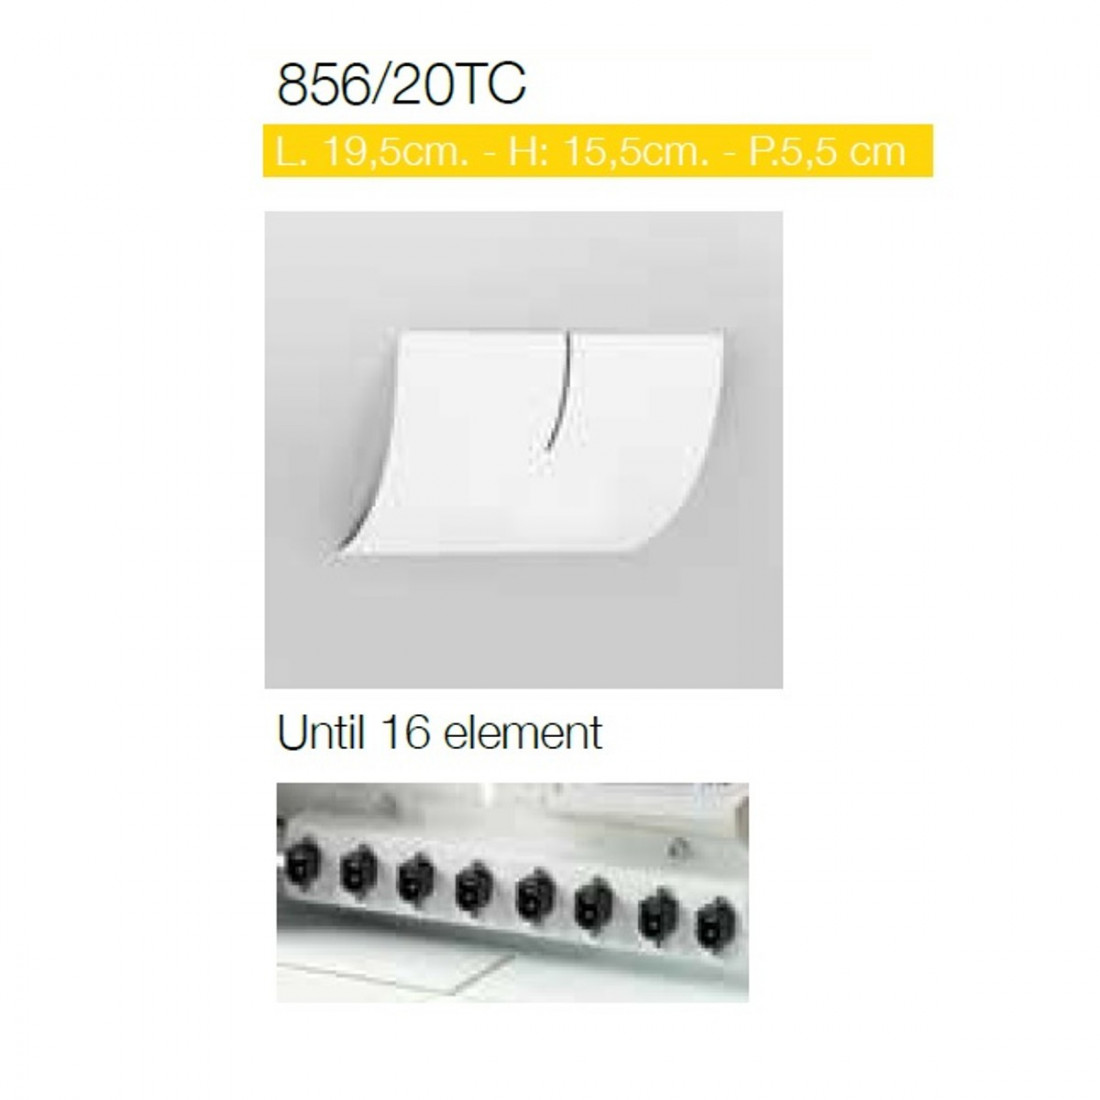 Base CO-LINE SYSTEM 856 20TC 16 éléments rectangulaire métal blanc noir sable fixation plafond